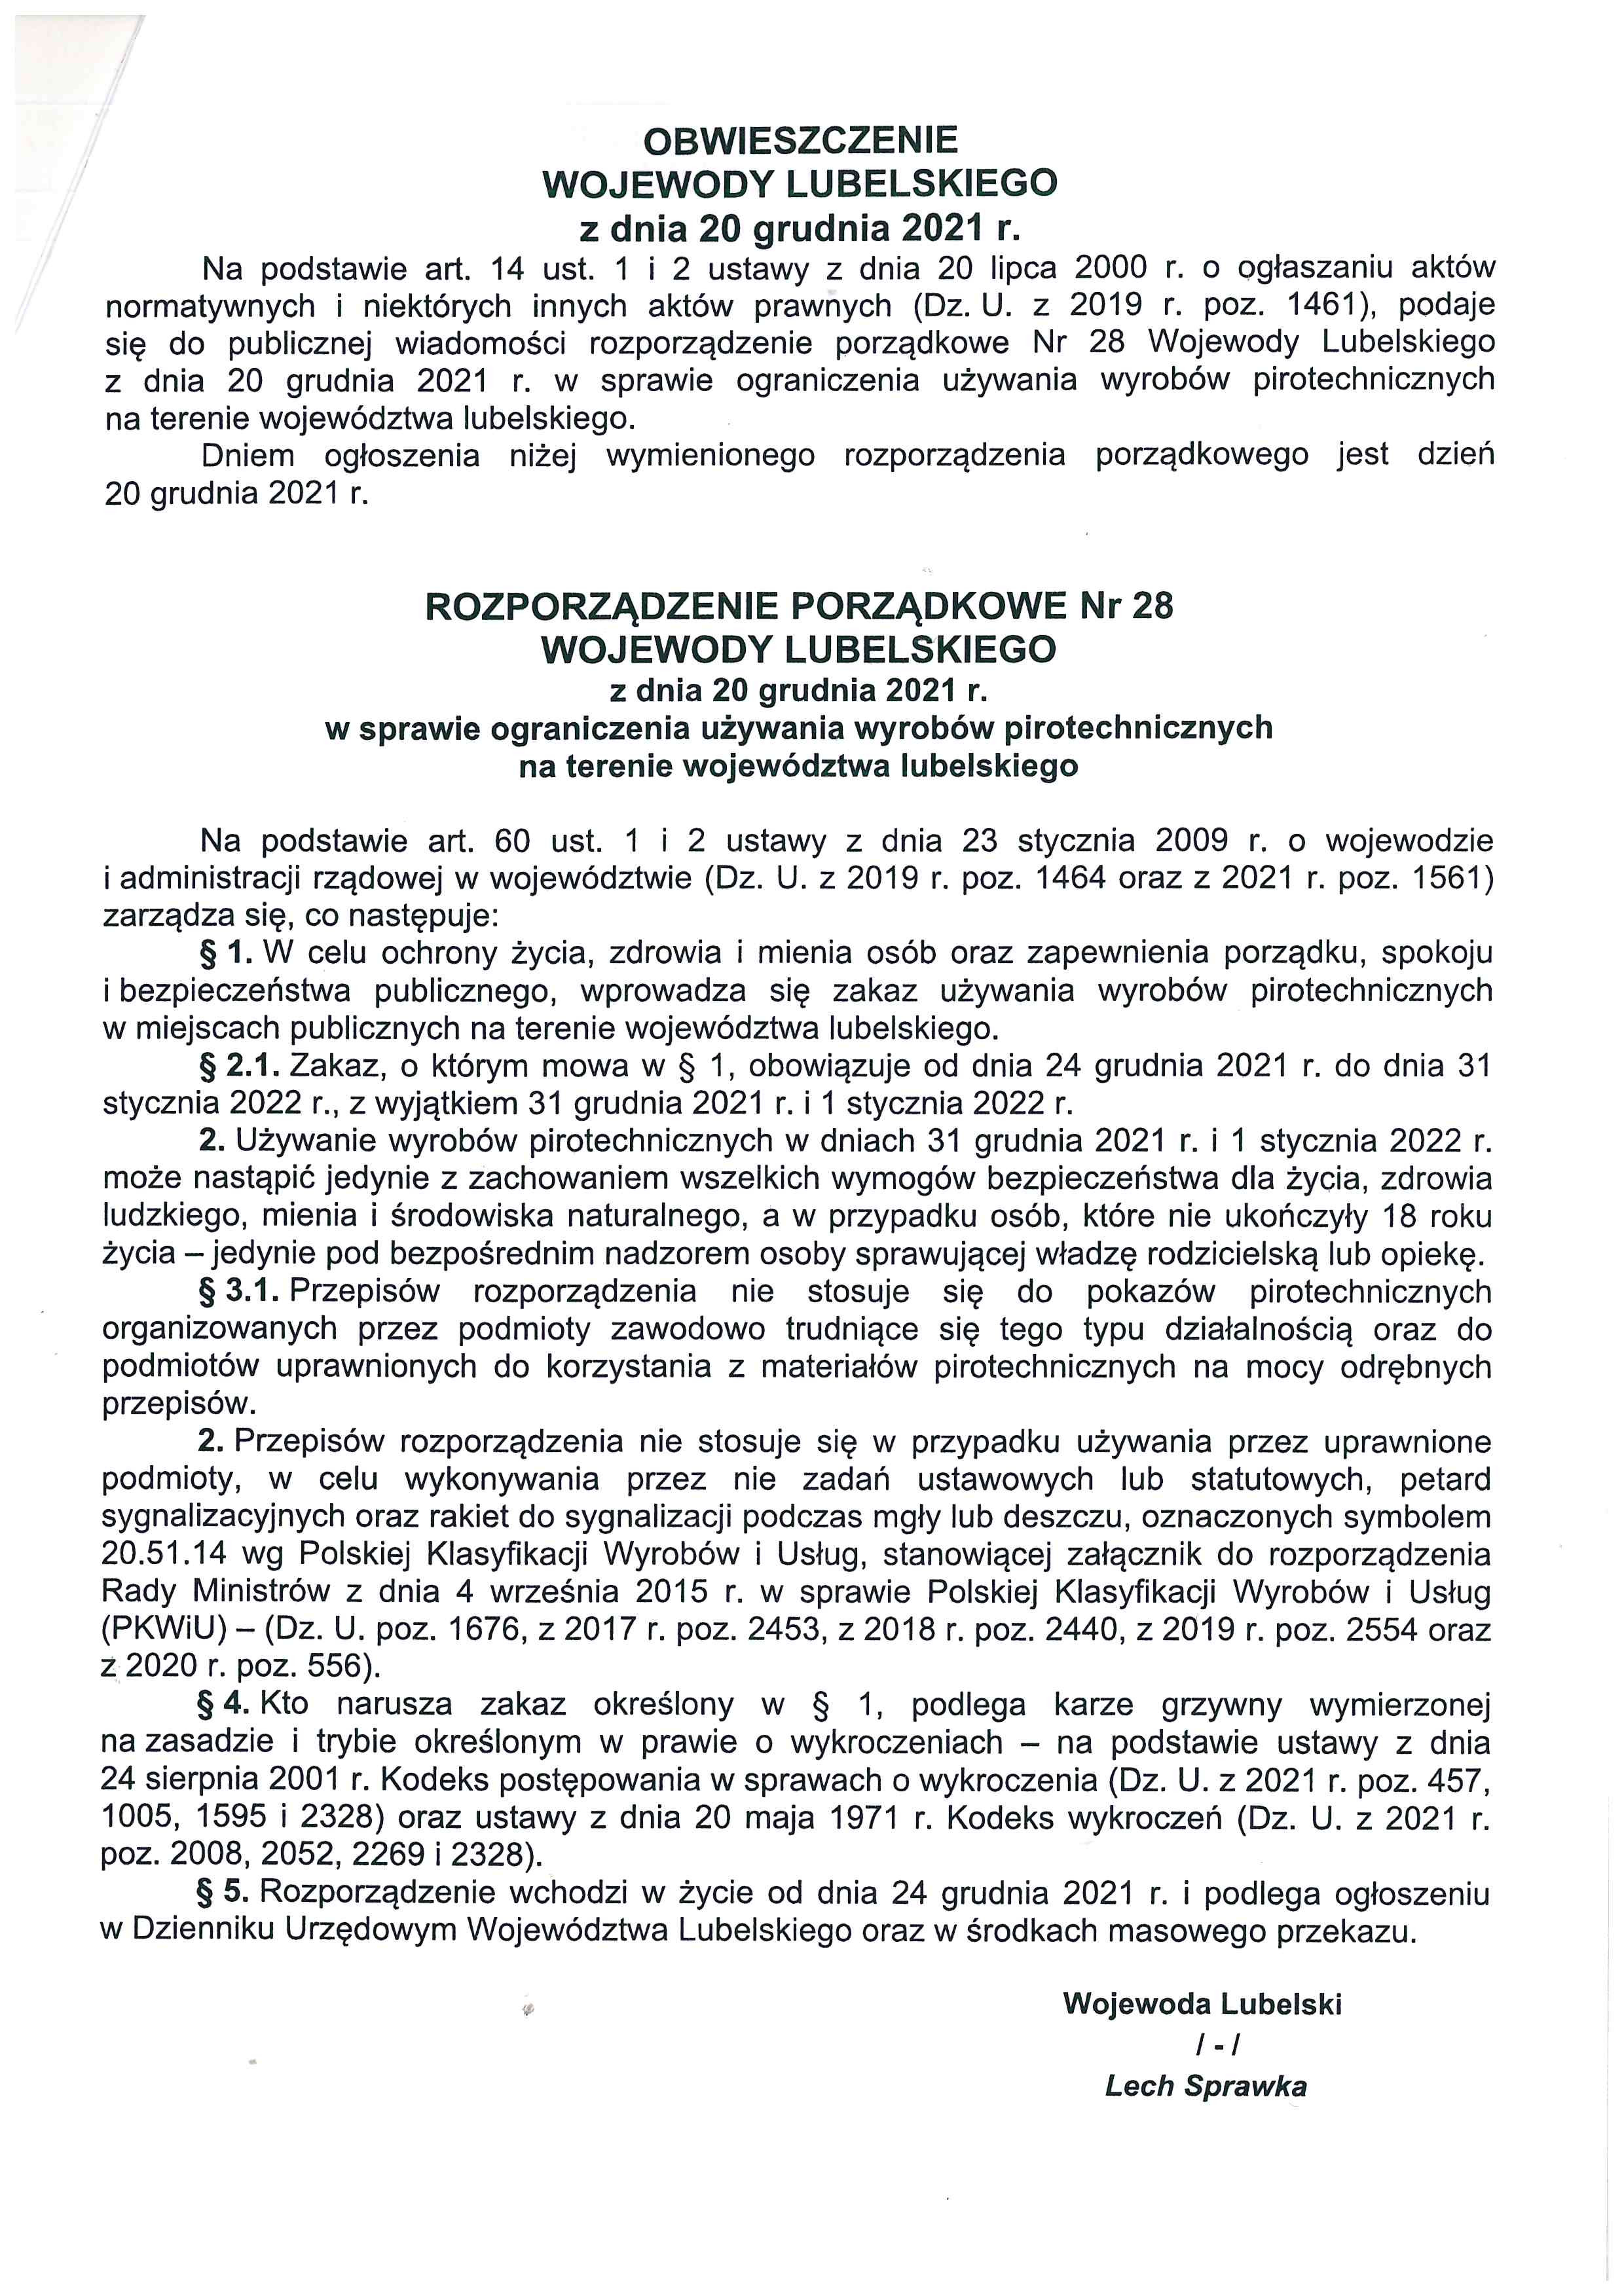 Rozporządzenie Porządkowe Nr 28 Wojewody Lubelskiego w sprawie ograniczenia uzywania wyrobów pirotechnicznych - zdjęcie